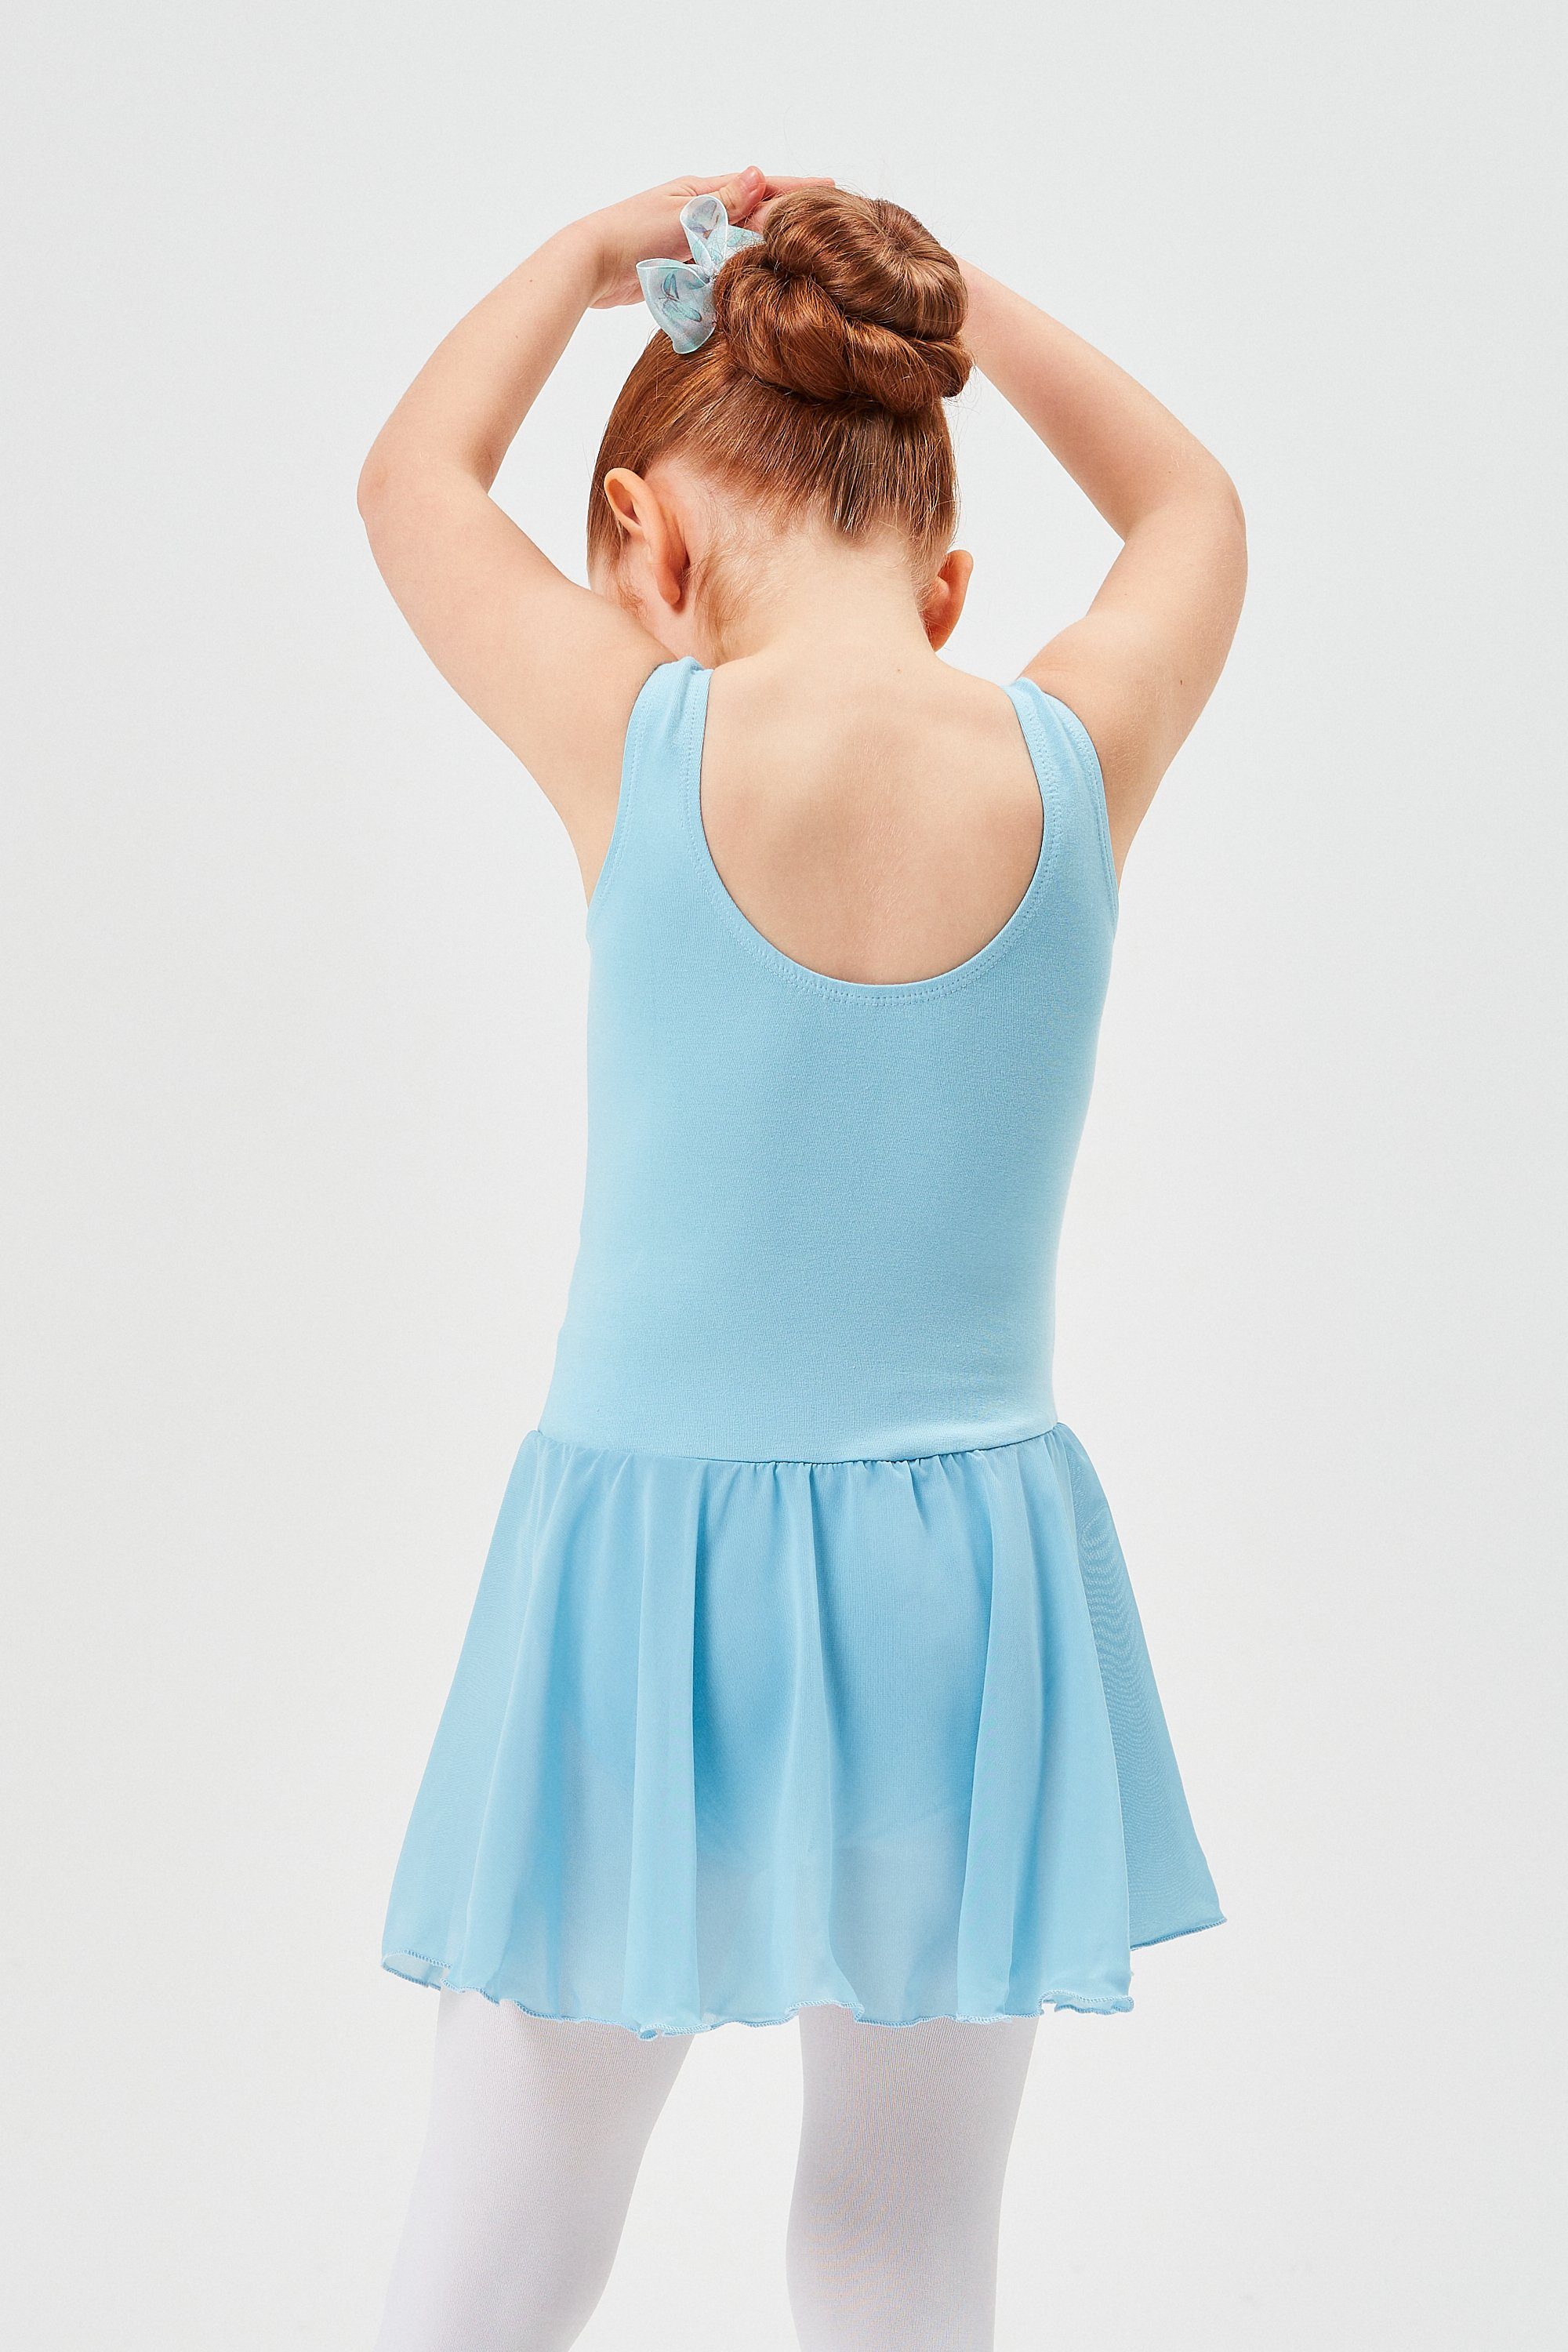 tanzmuster Chiffonkleid Ballett Trikot Mädchen hellblau Röckchen weichem aus wunderbar Ballettkleid Minnie Chiffon mit für Baumwollmaterial